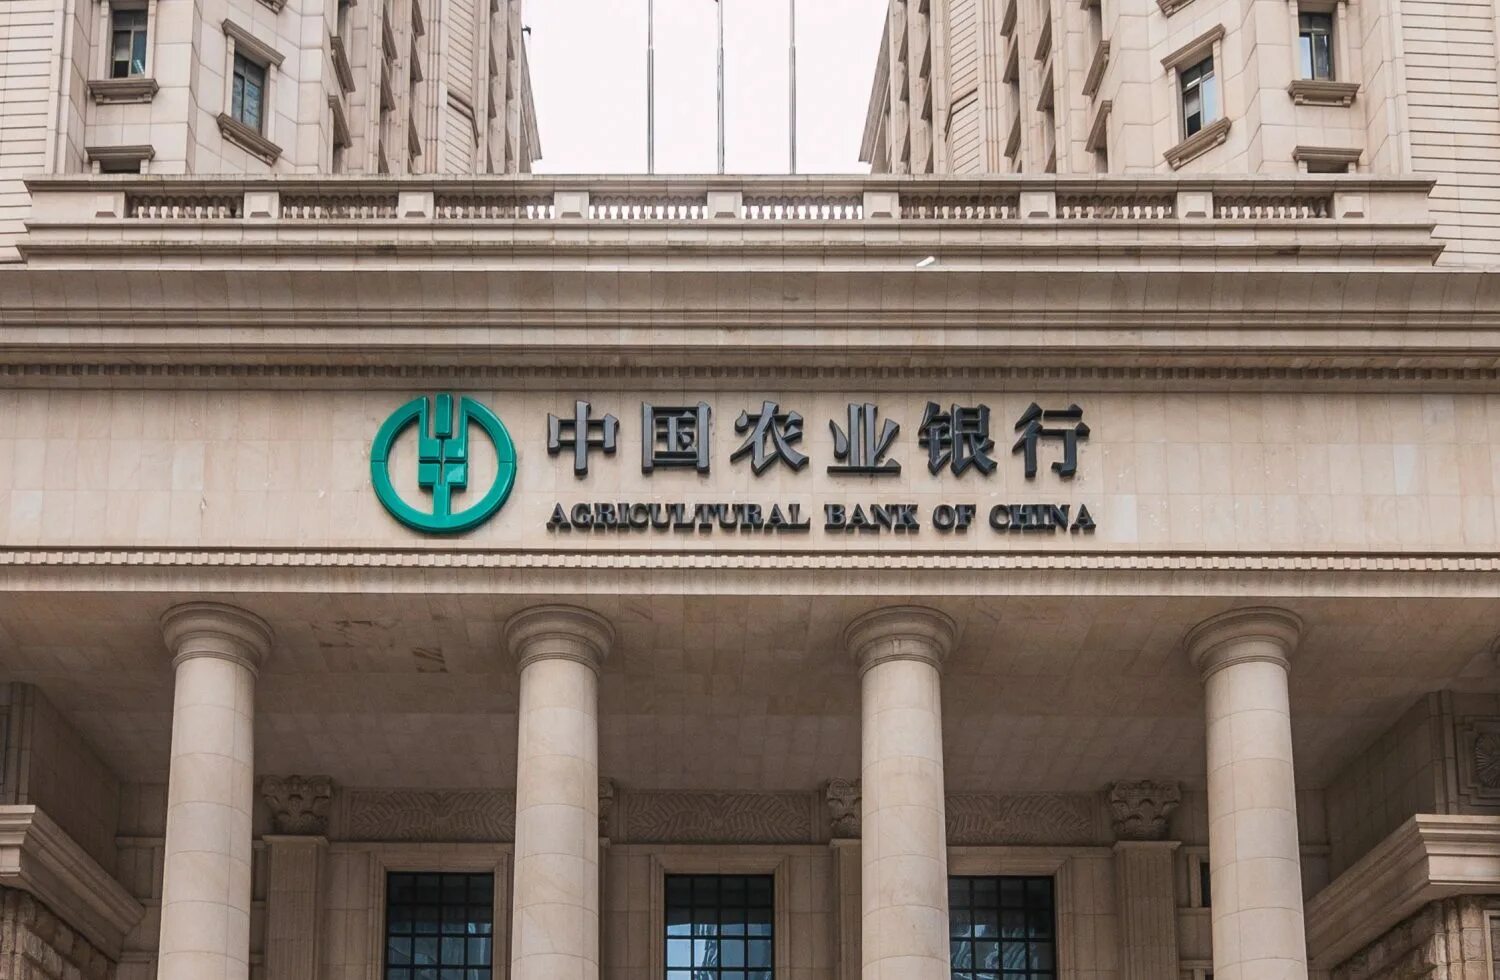 Abc bank. Банк Китая (Bank of China). Сельскохозяйственный банк Китая. Банки развития Китая. Агрокульурный бан Китая.